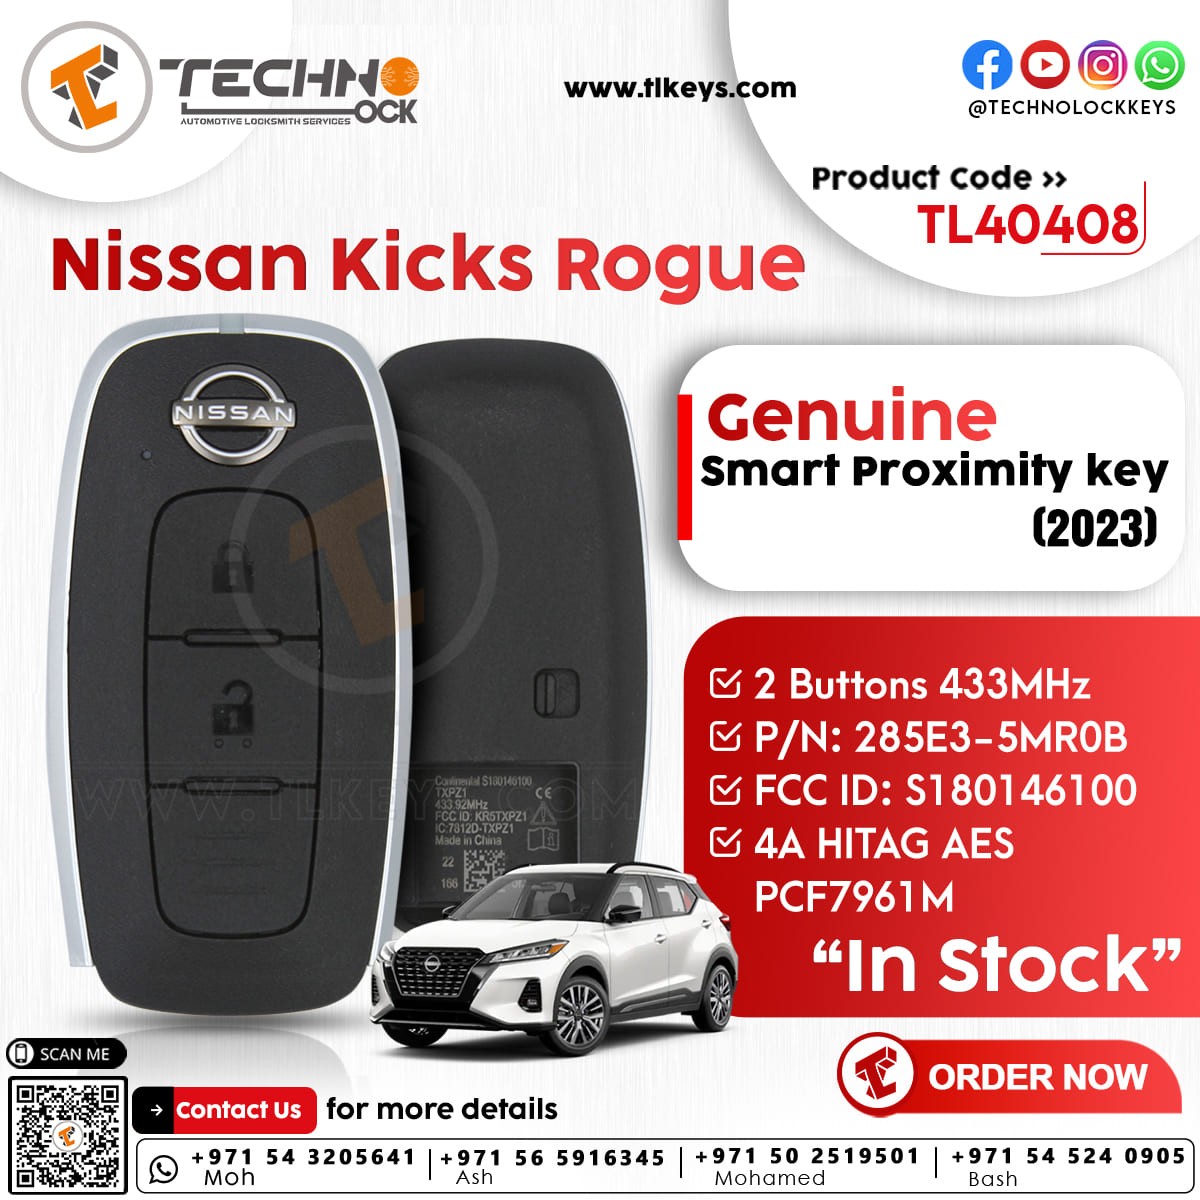 Genuine Nissan Kicks Rogue Smart Proximity 2023 P/N: 285E3-5MR0B